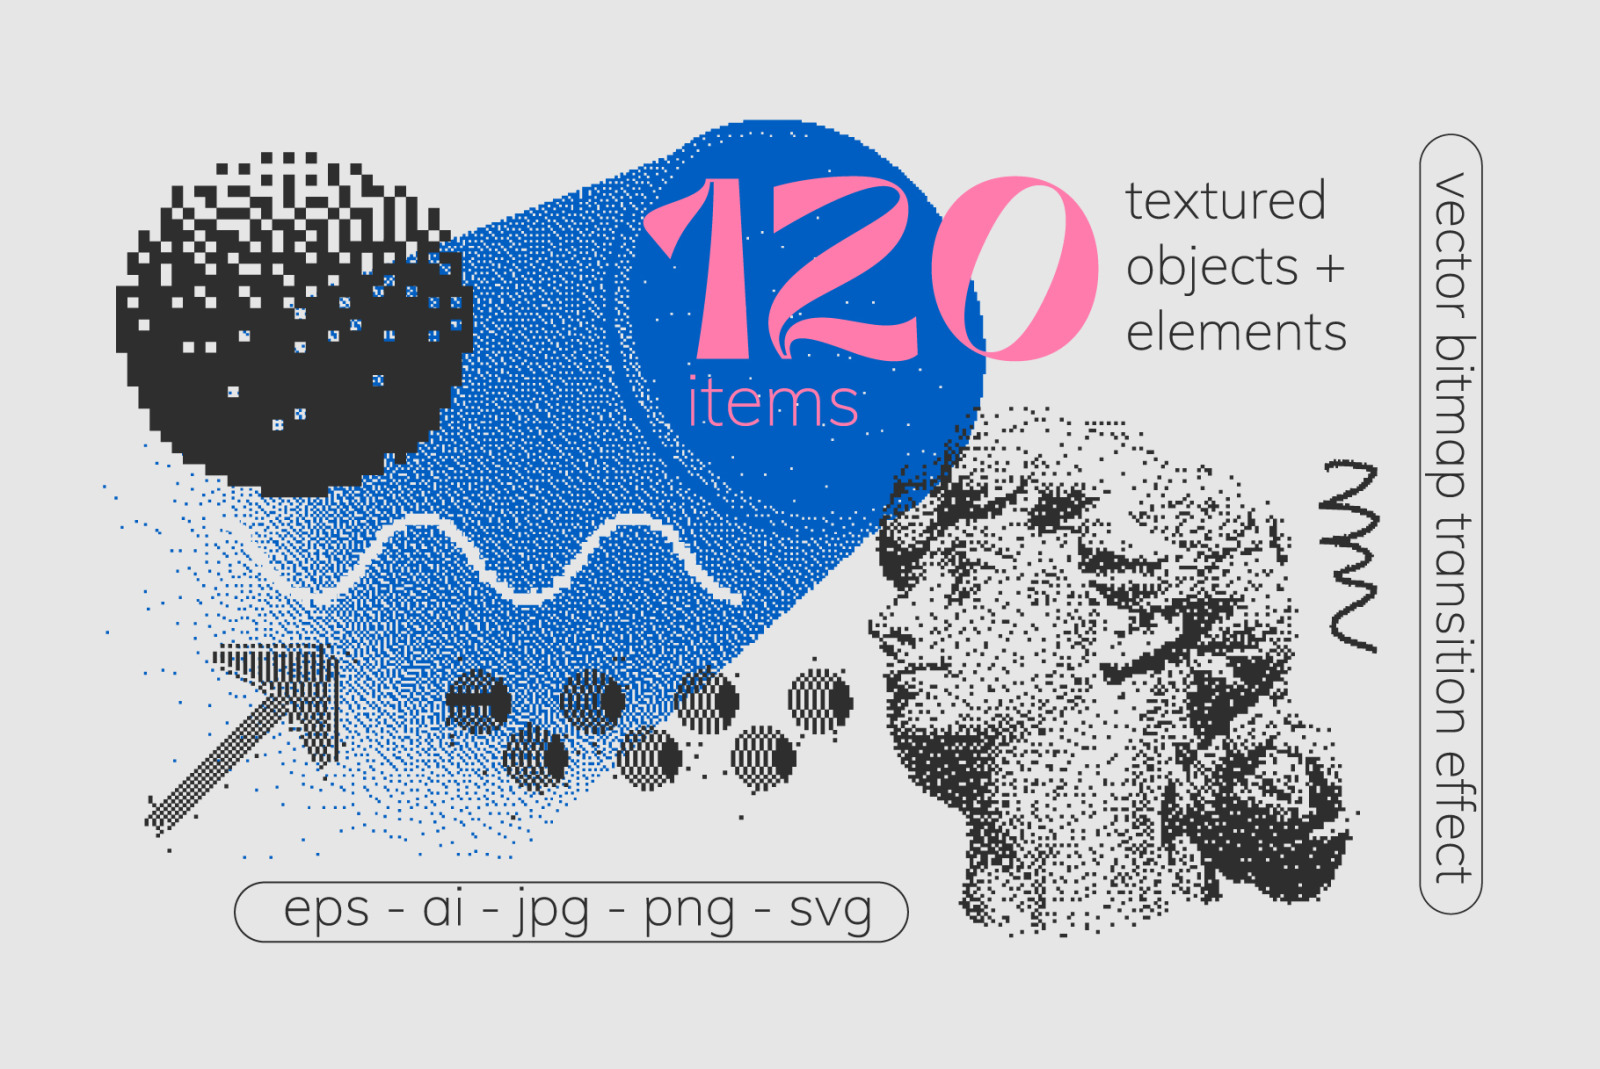 120 个矢量抖动纹理剪贴画形状套装 Vector Dither Textured Clip Art Shapes Set插图